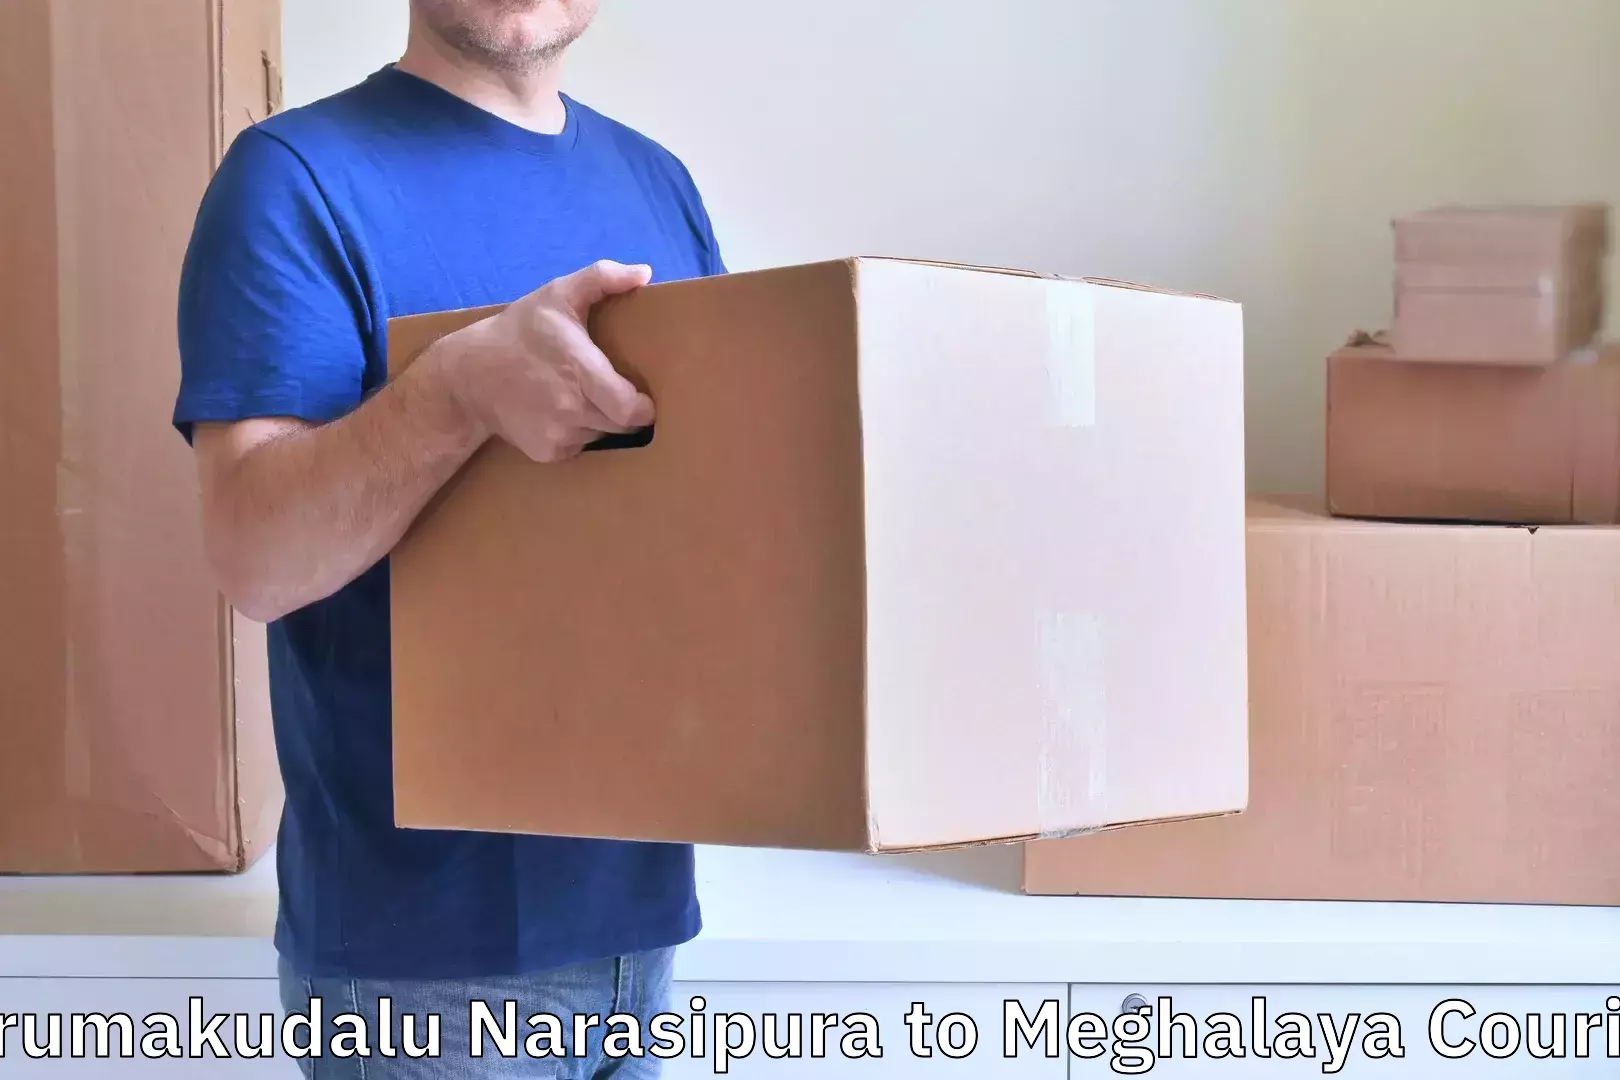 Digital baggage courier Tirumakudalu Narasipura to Nongpoh